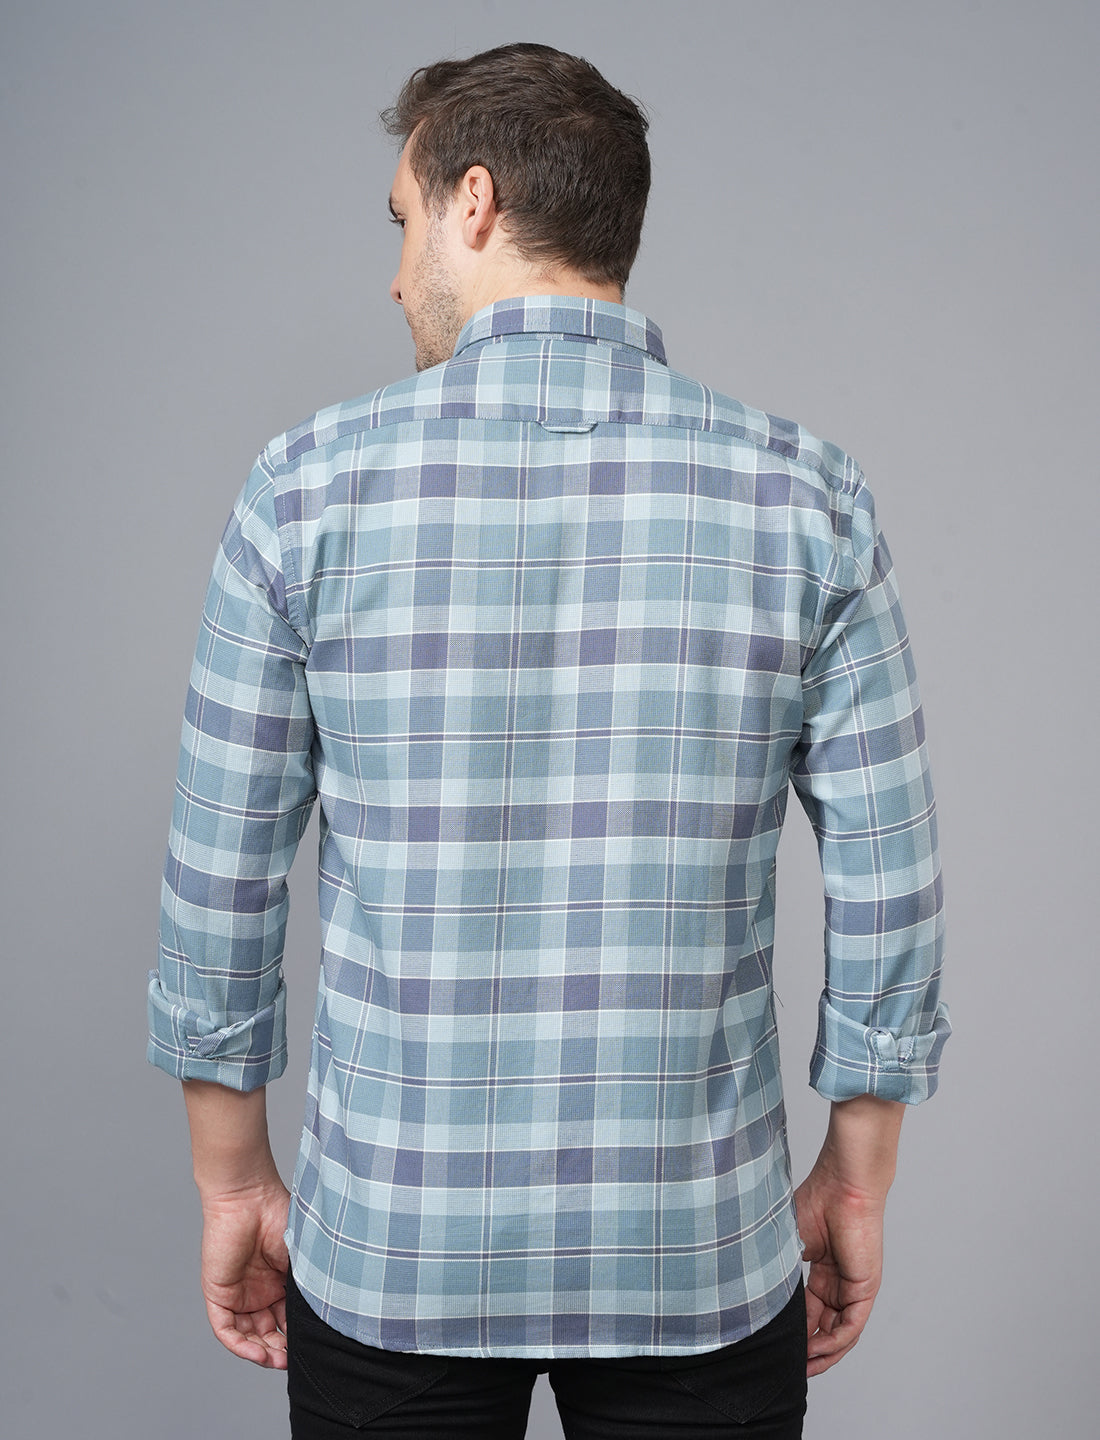 Buy Green Check Full Sleeve Shirt For Men Online